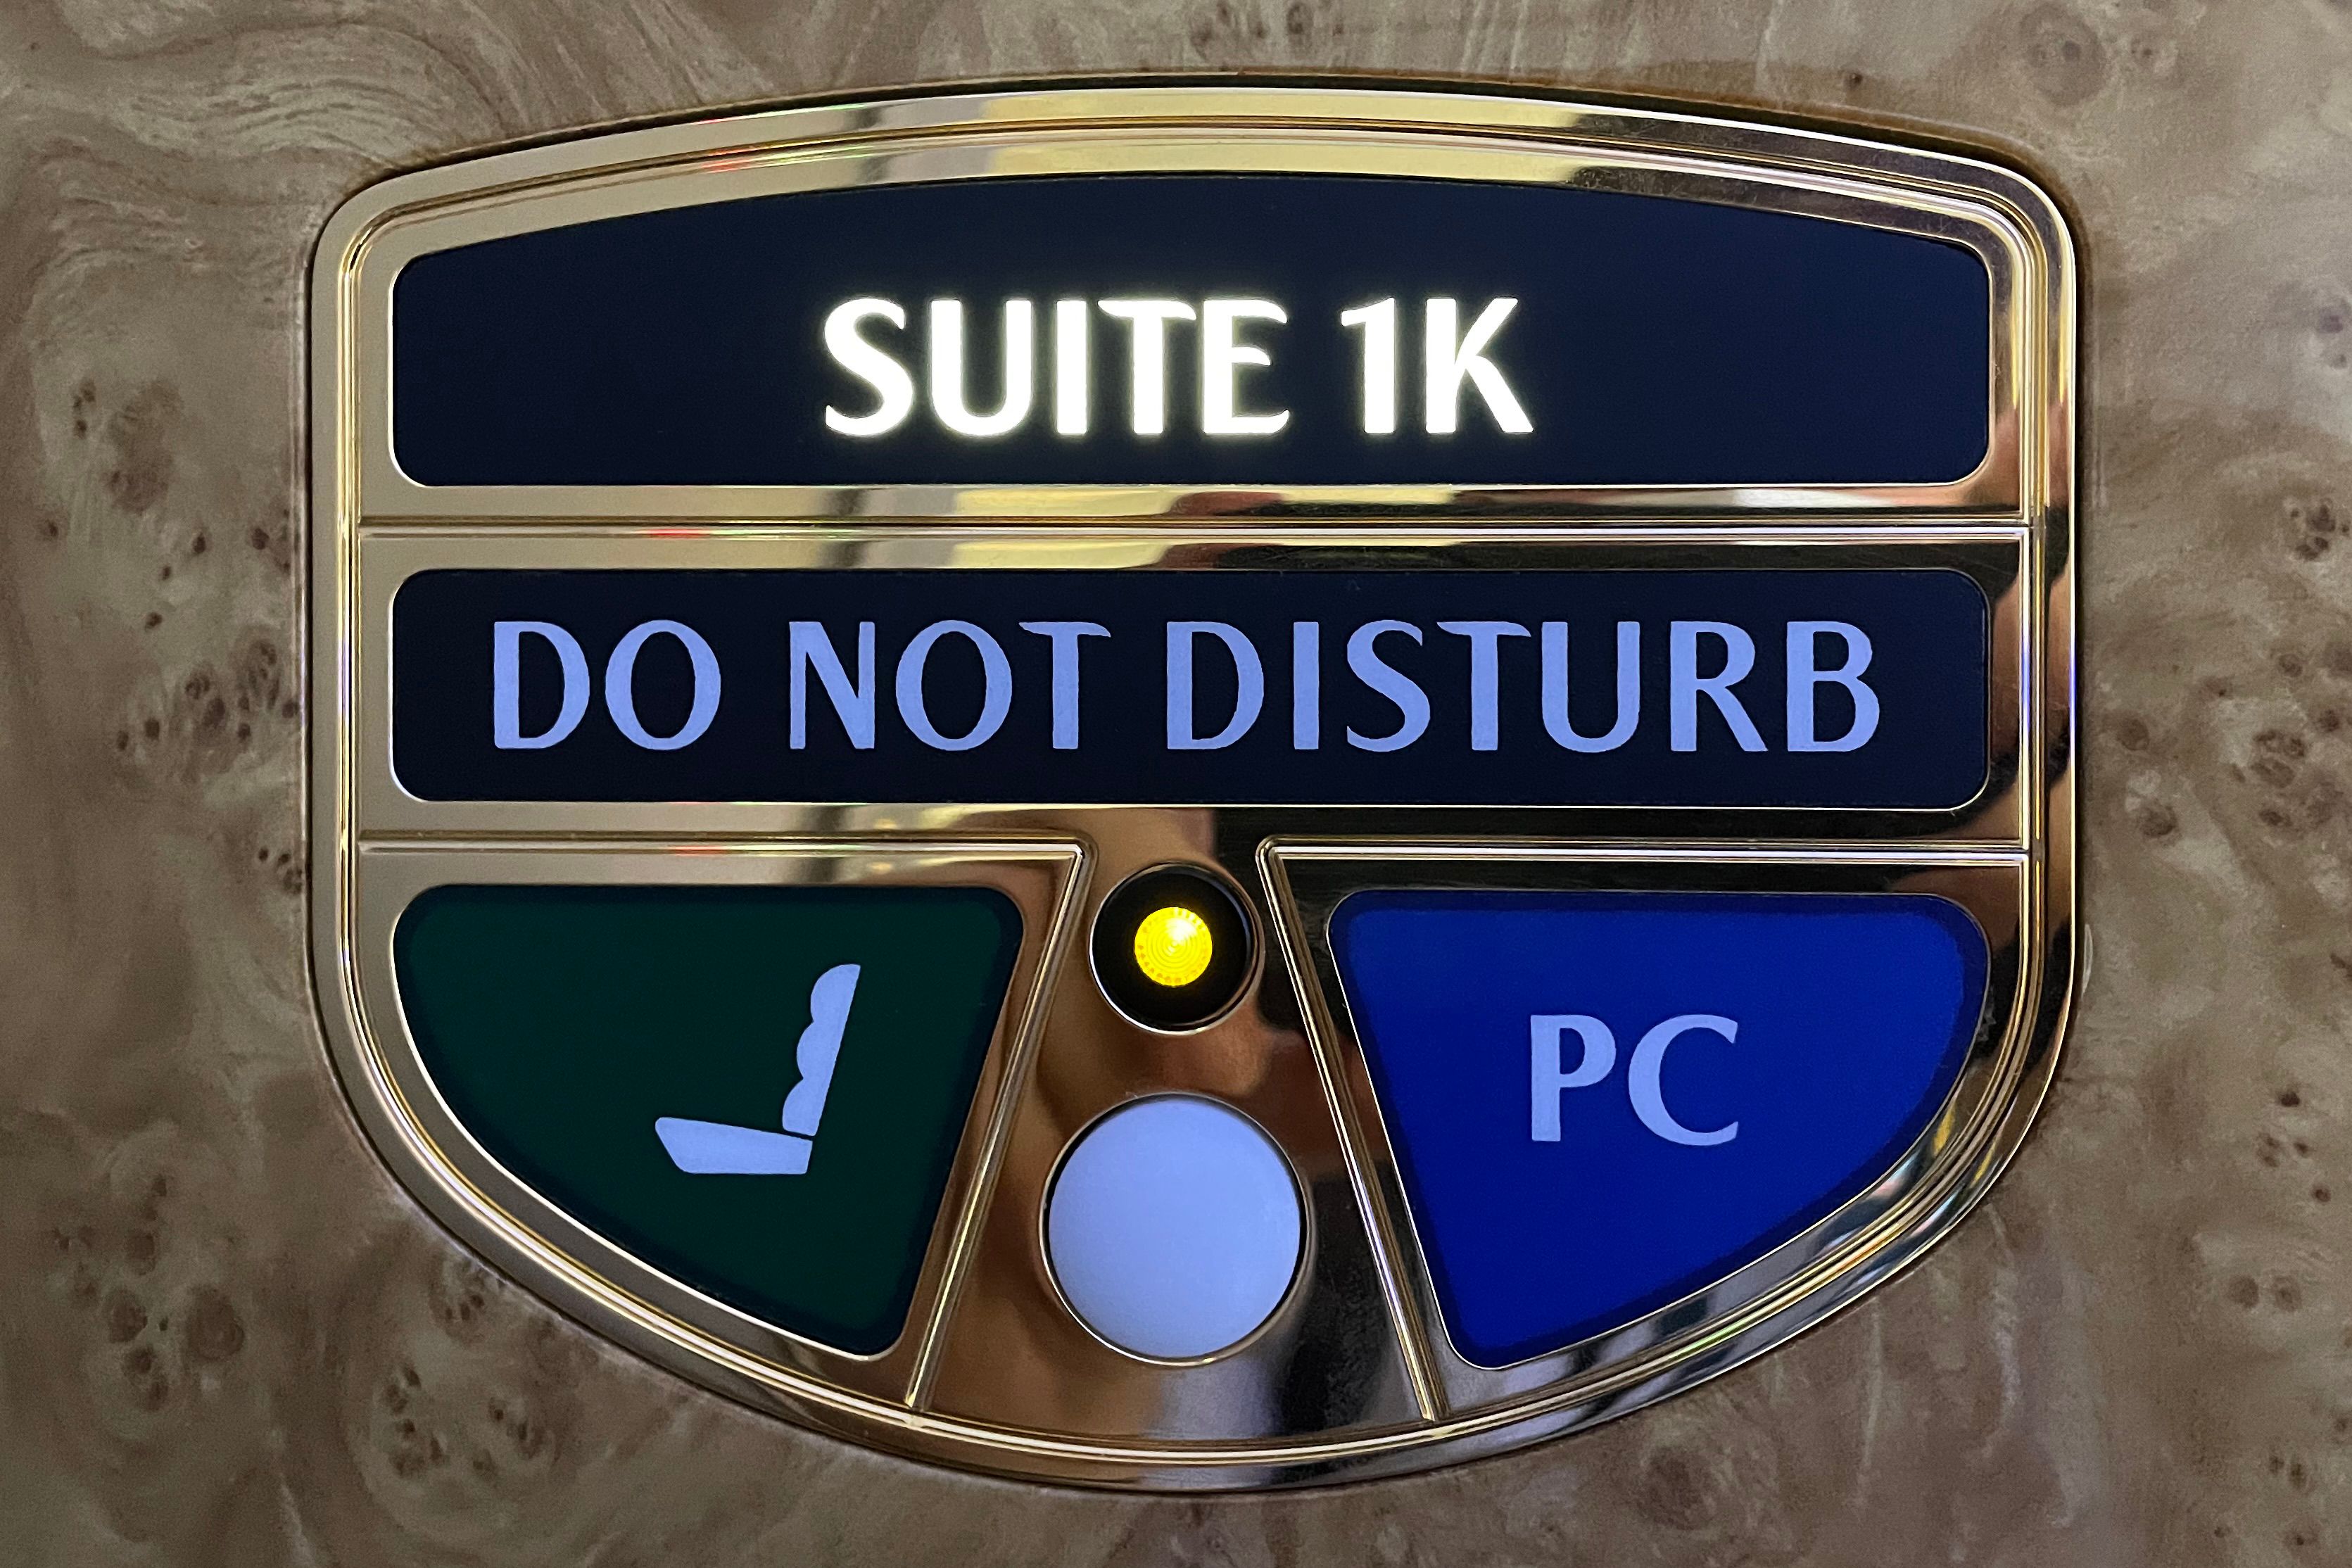 Emirates first class do not disturb sign